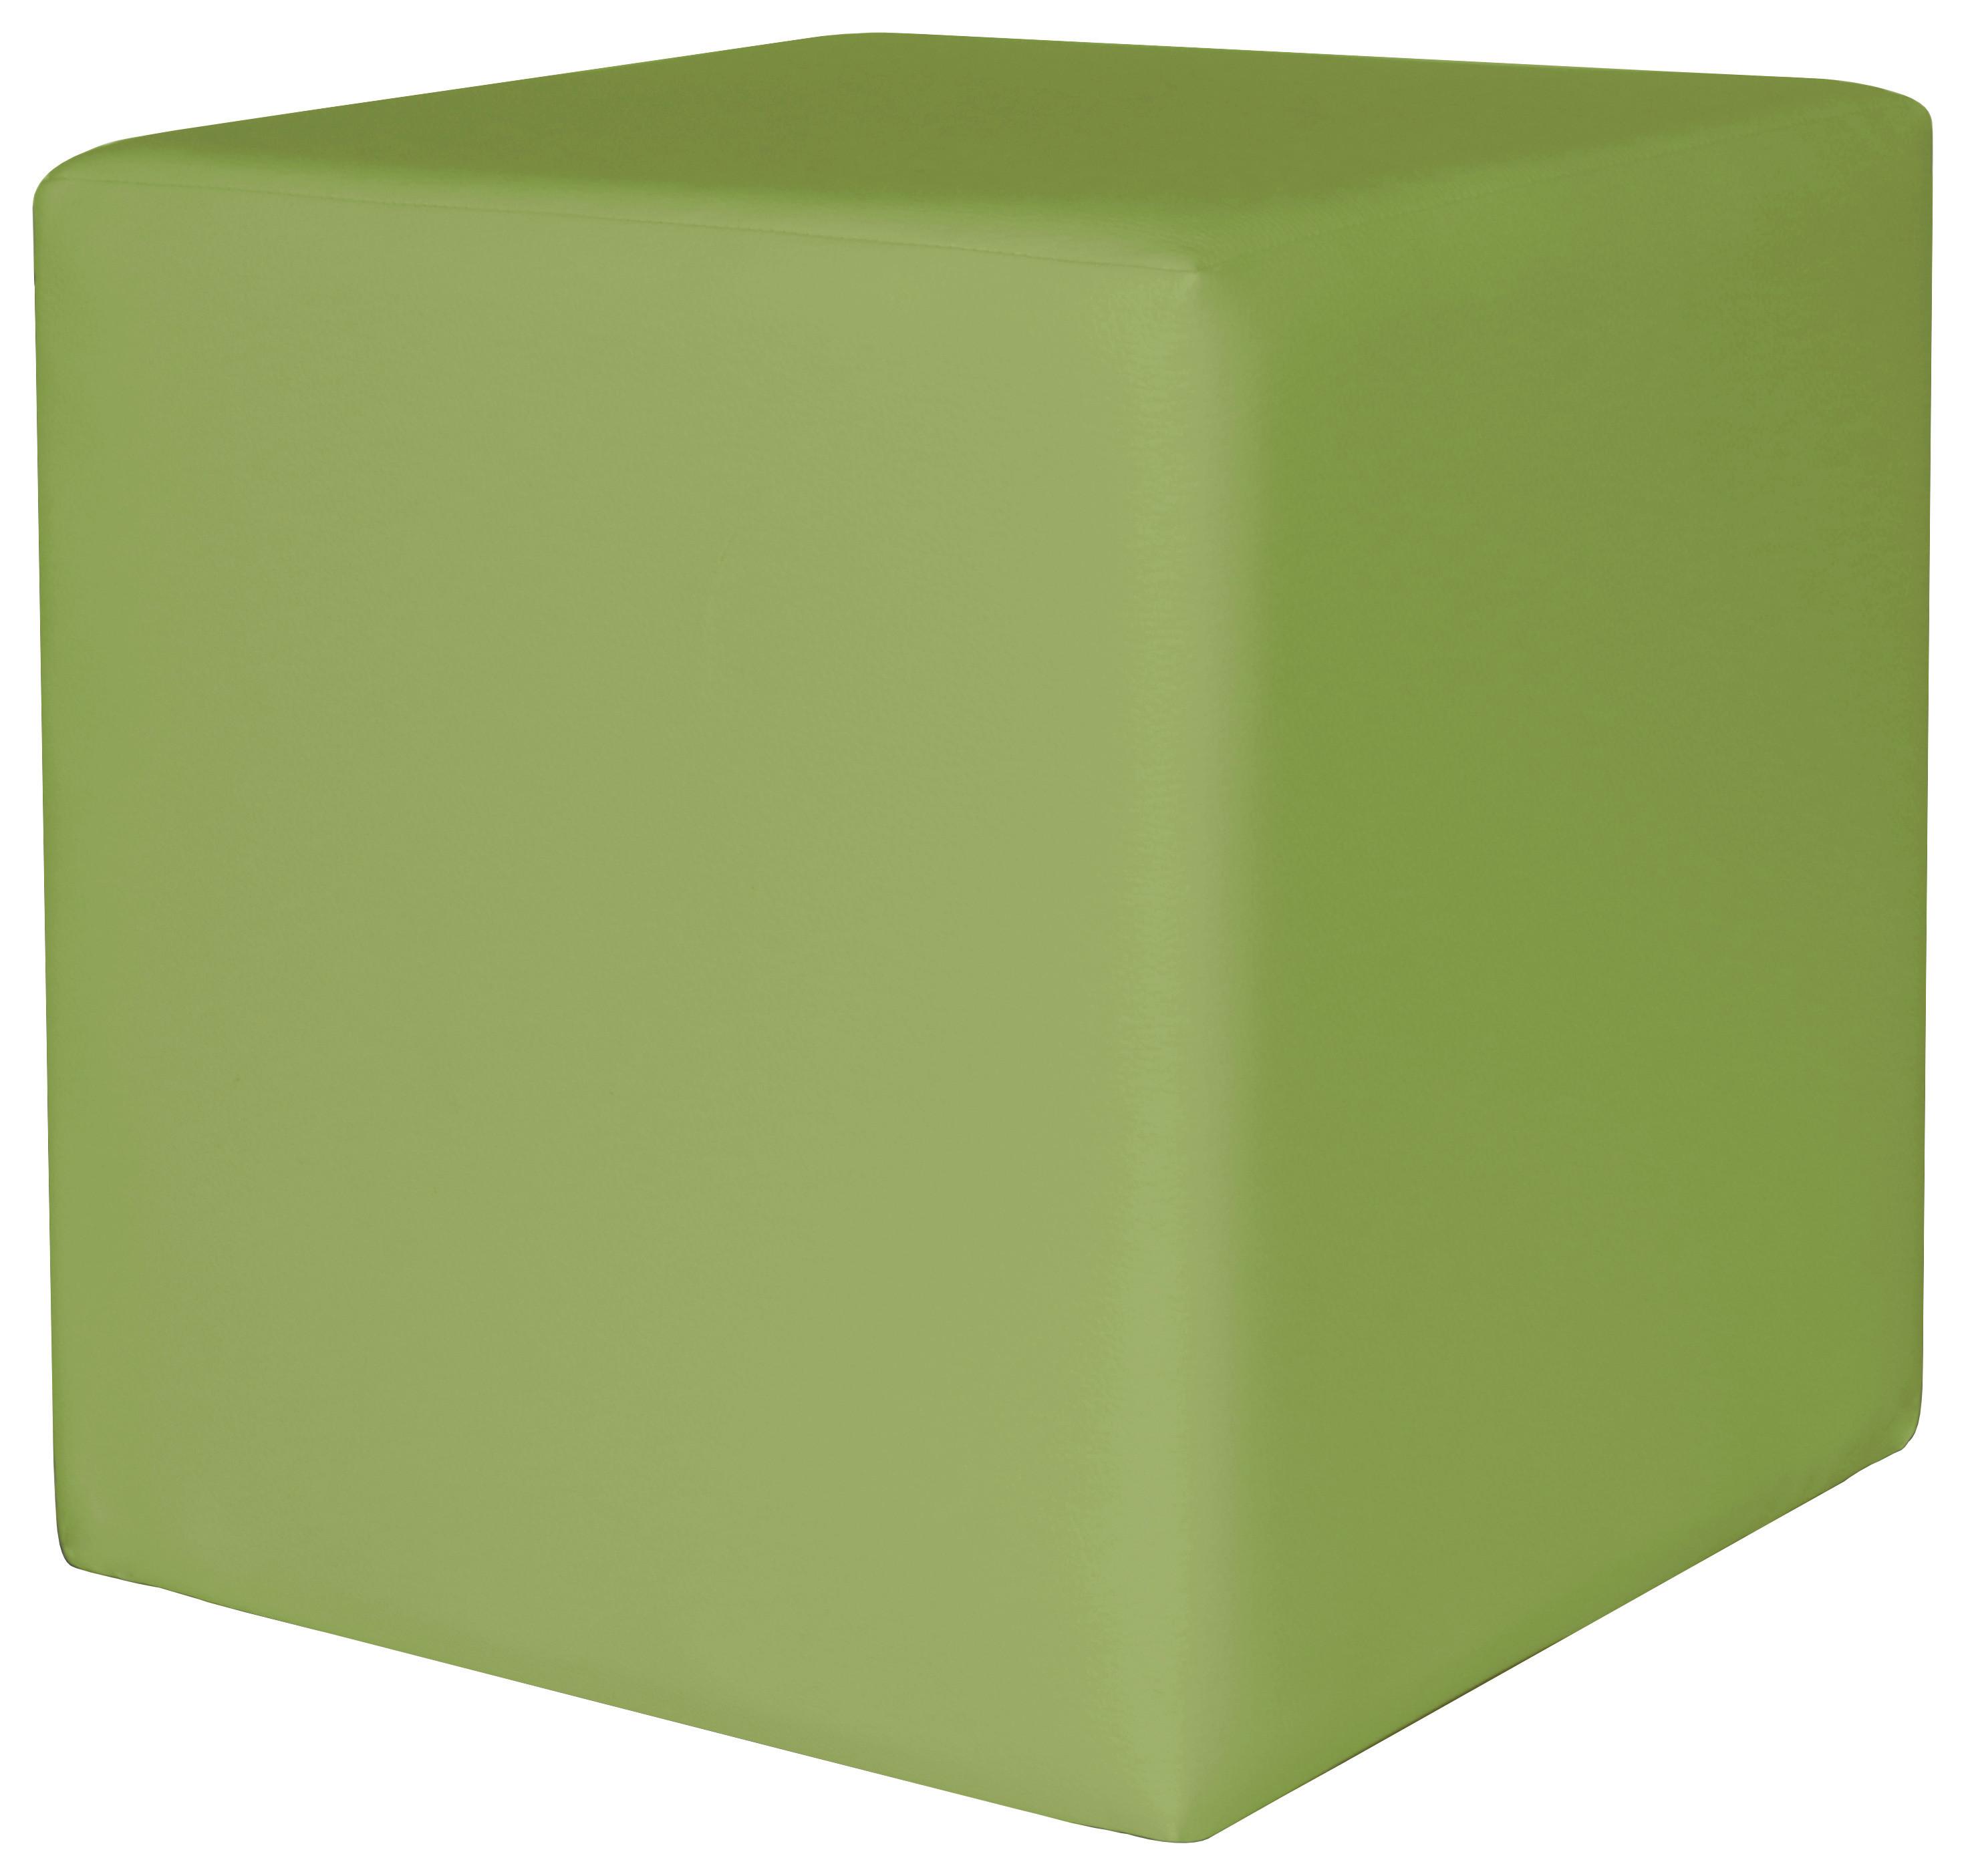 Tabure Colorfull Cube - zelena/bež, Modern, tekstil/plastika (40/40/42cm) - Based